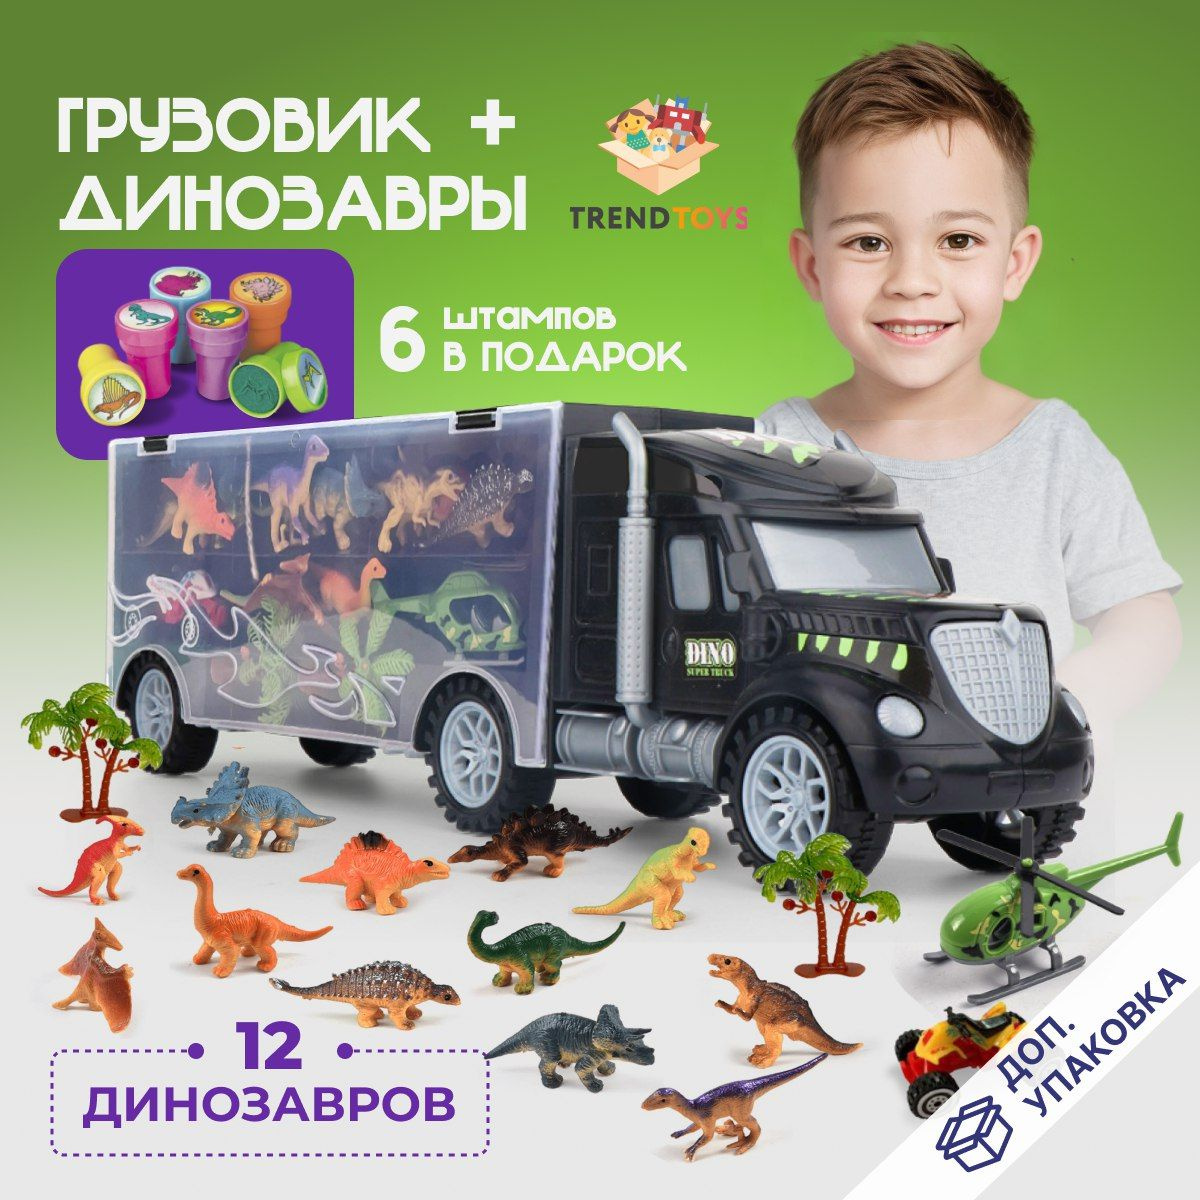 Развивающая игрушка поможет вашему ребенку окунуться в Парк Юрского периода и изучить виды динозавров, существовавших миллионы лет назад.